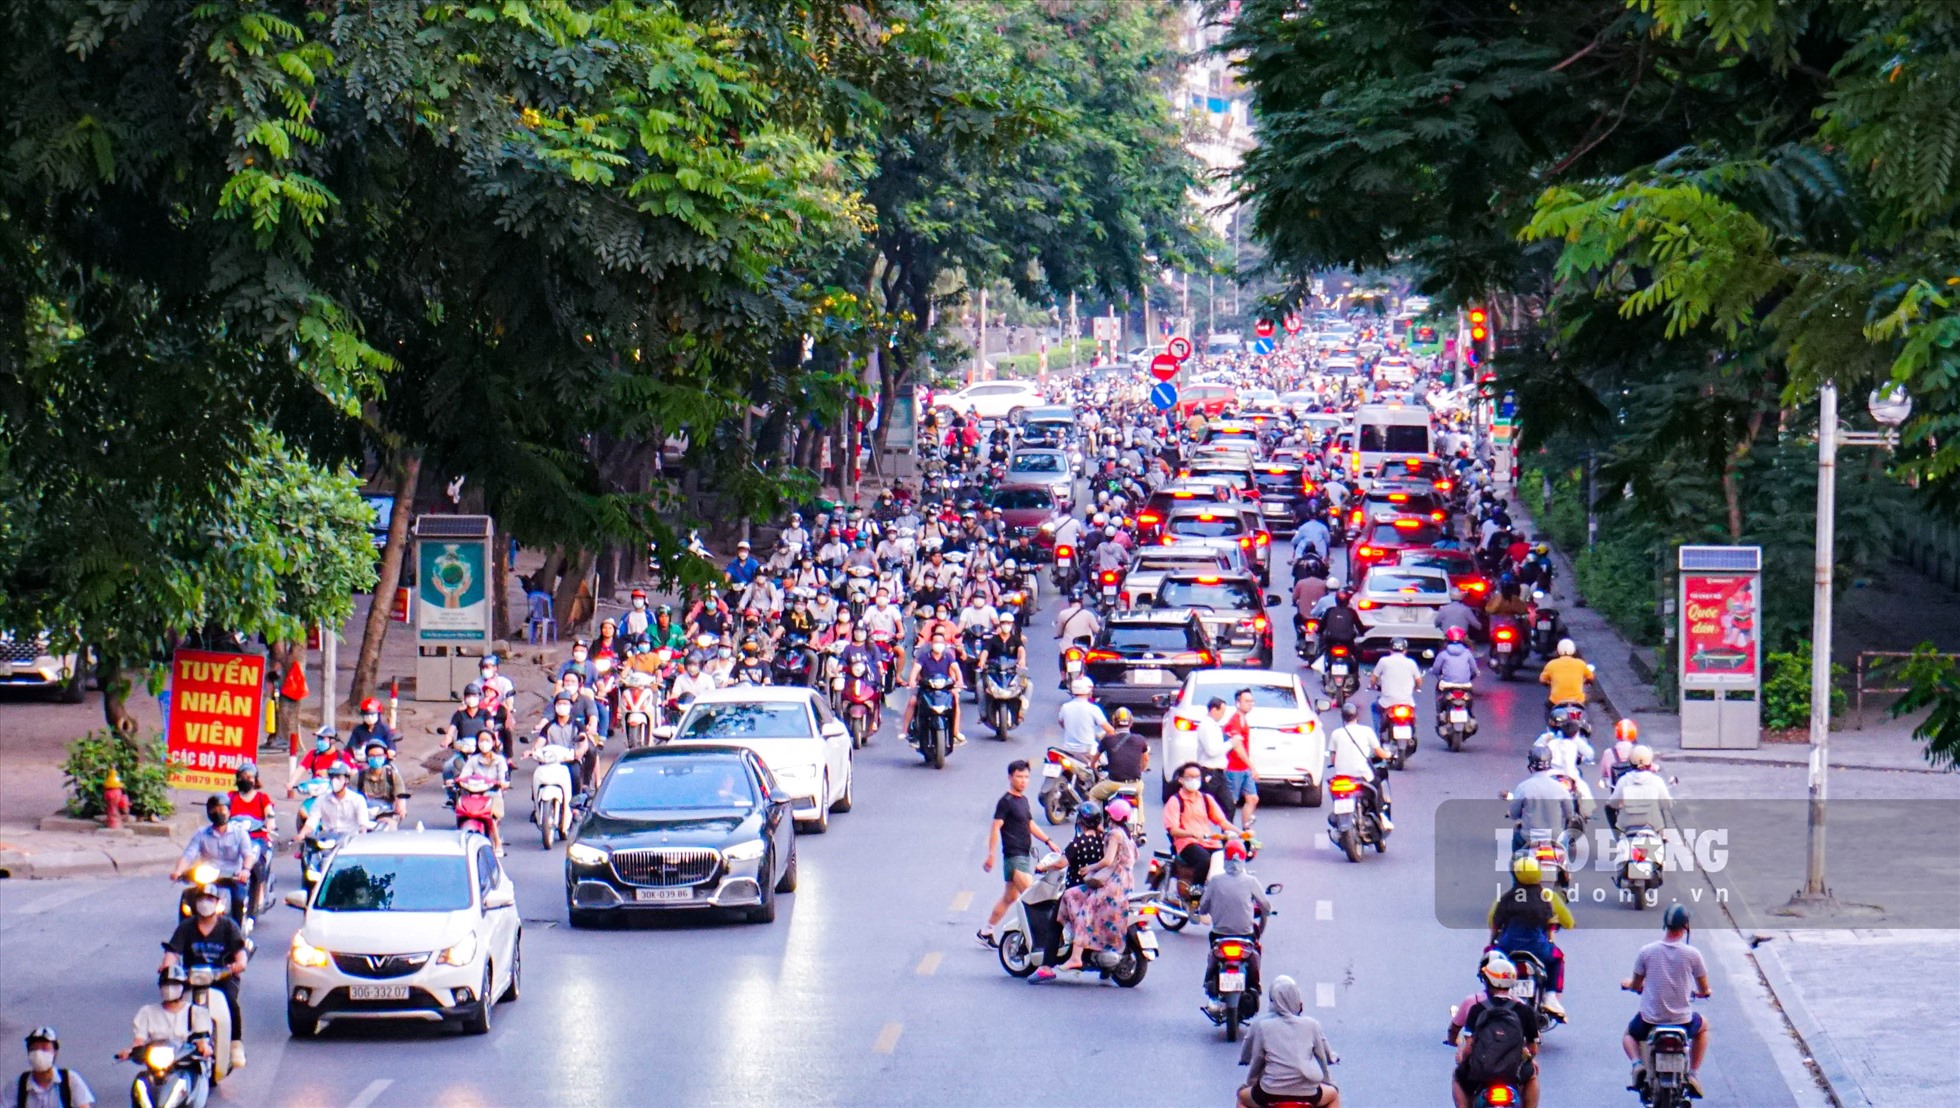 Cùng thời điểm, tại đường Hoàng Minh Giám (Cầu Giấy, Hà Nội) cũng xảy ra tình trạng ùn tắc kéo dài, nhiều phương tiện leo lên vỉa hè để đi gây nguy hiểm cho người đi bộ.